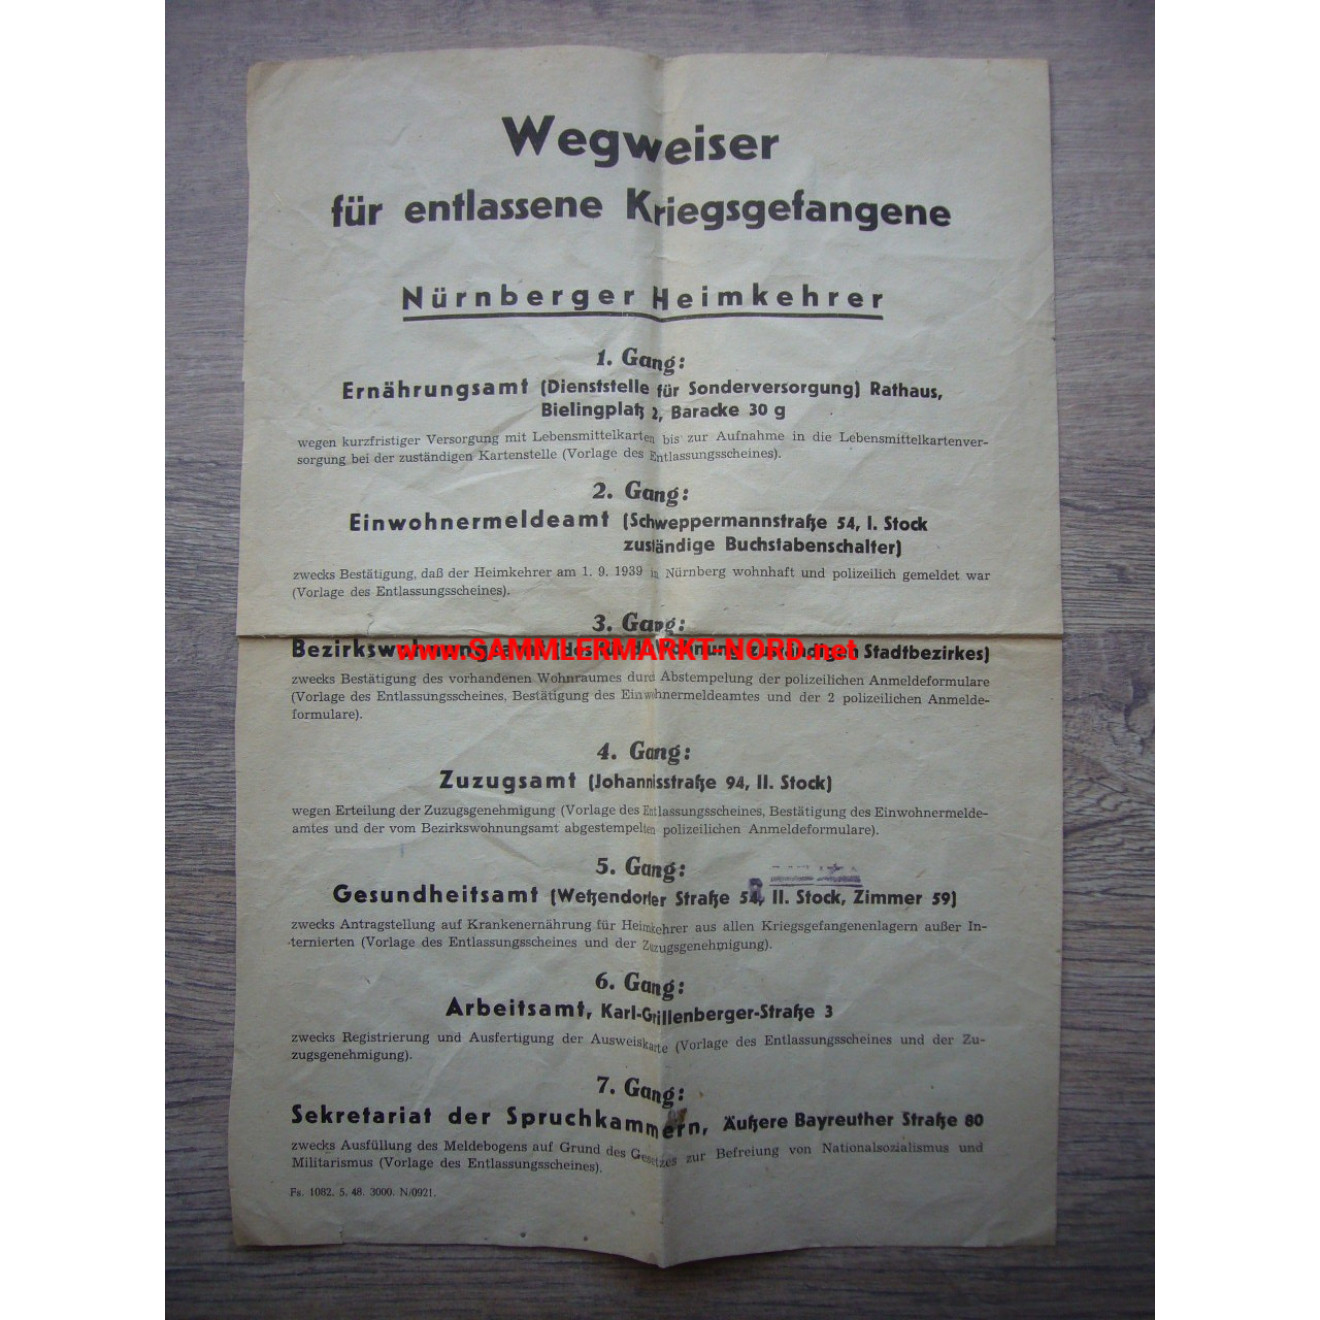 Wegweiser für entlassene Kriegsgefangene - Nürnberger Heimkehrer 1948